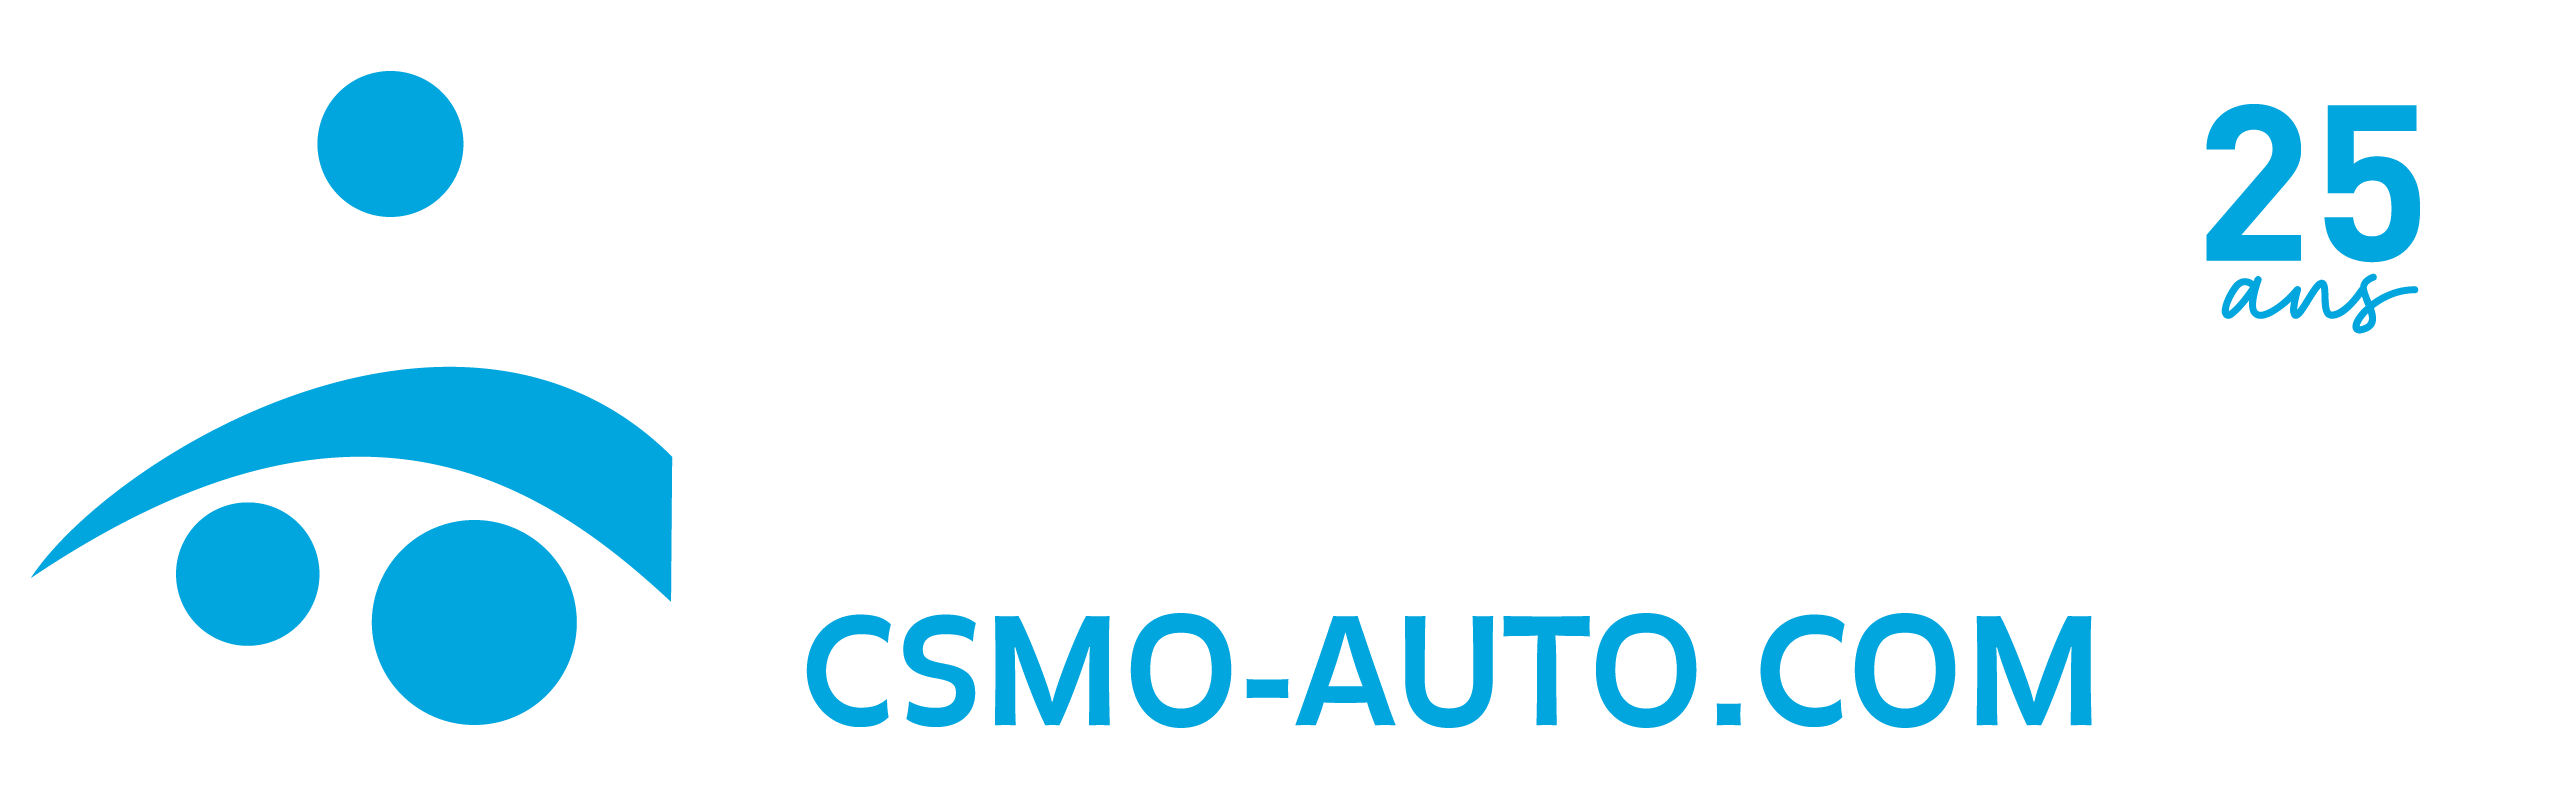 Logo Comité sectoriel de main-d'oeuvre des services automobiles